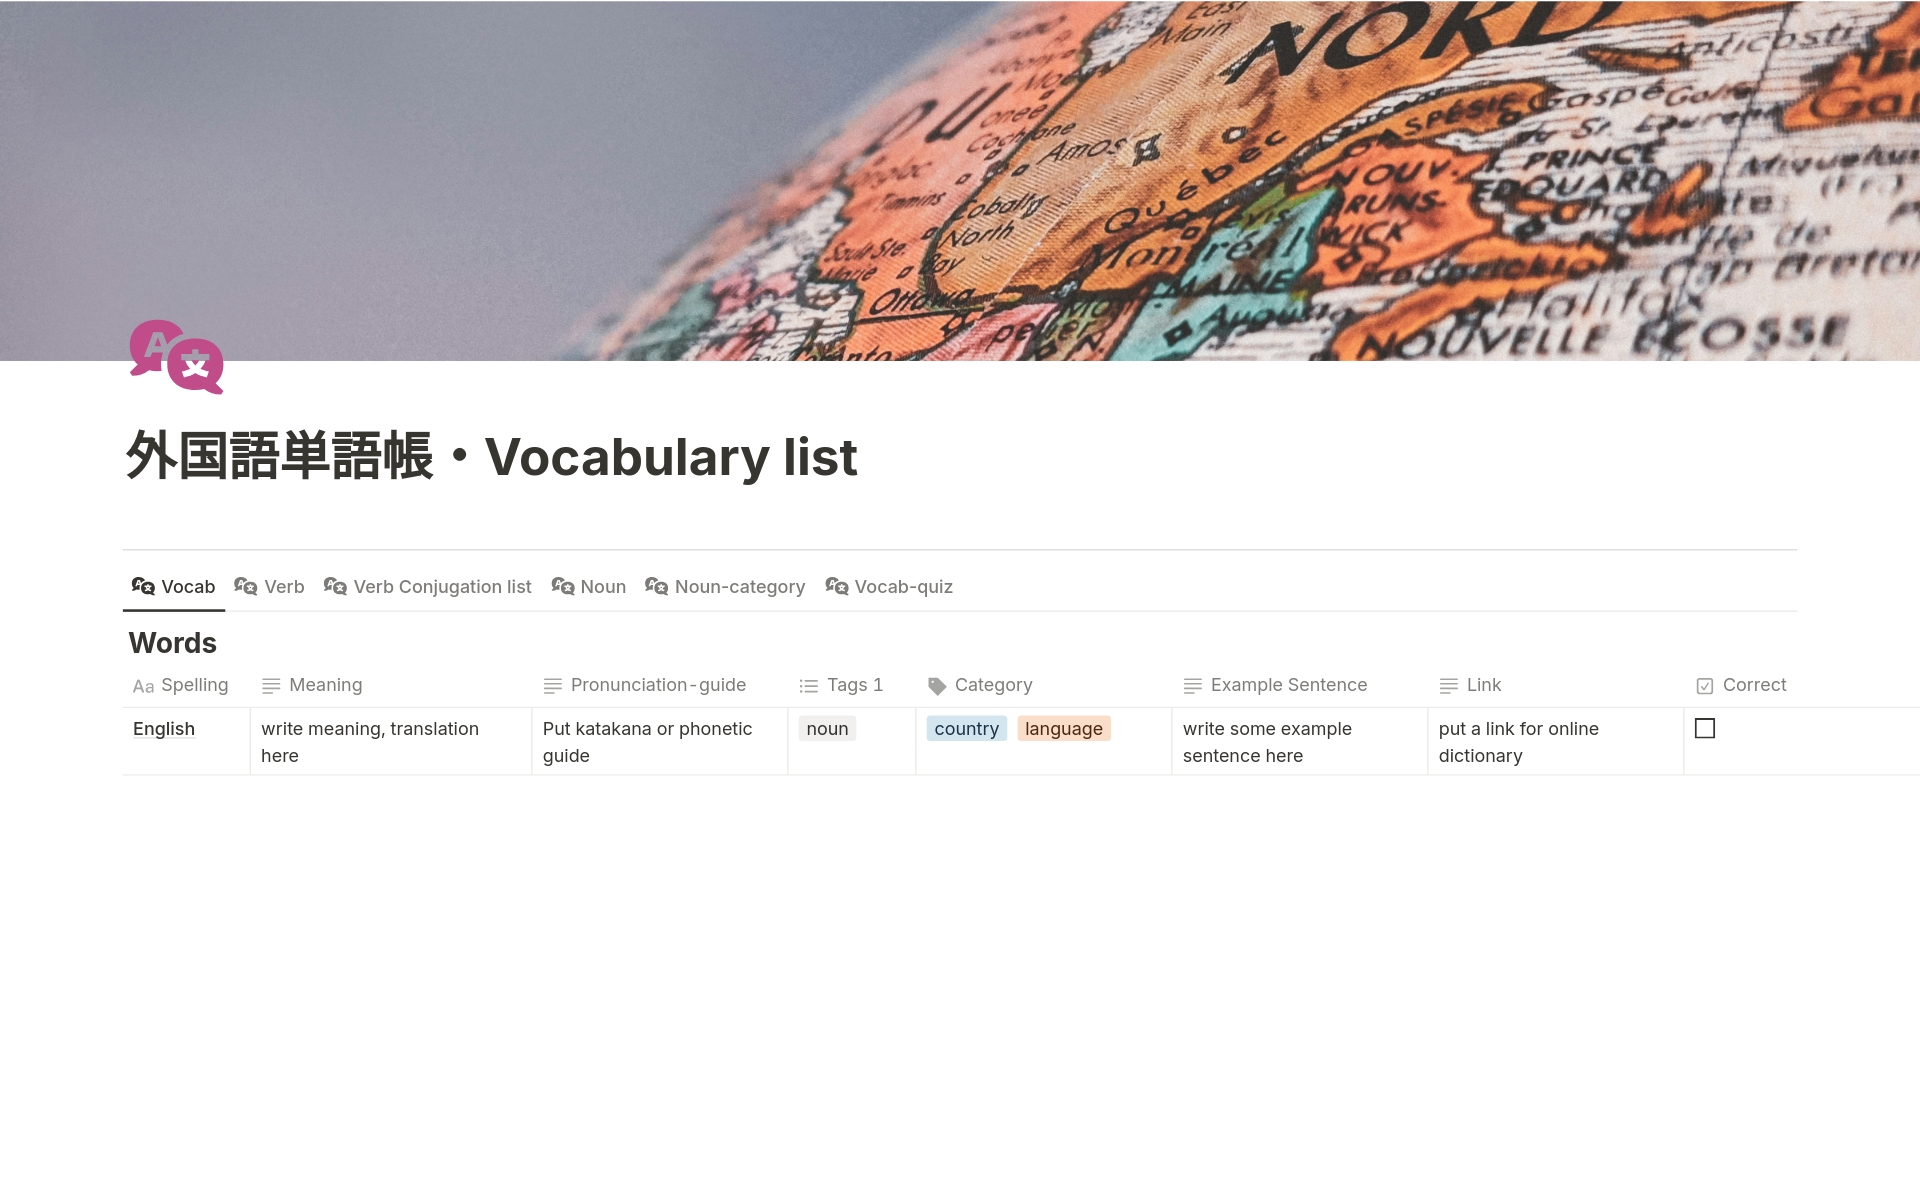 Uma prévia do modelo para 外国語単語帳・Vocabulary list